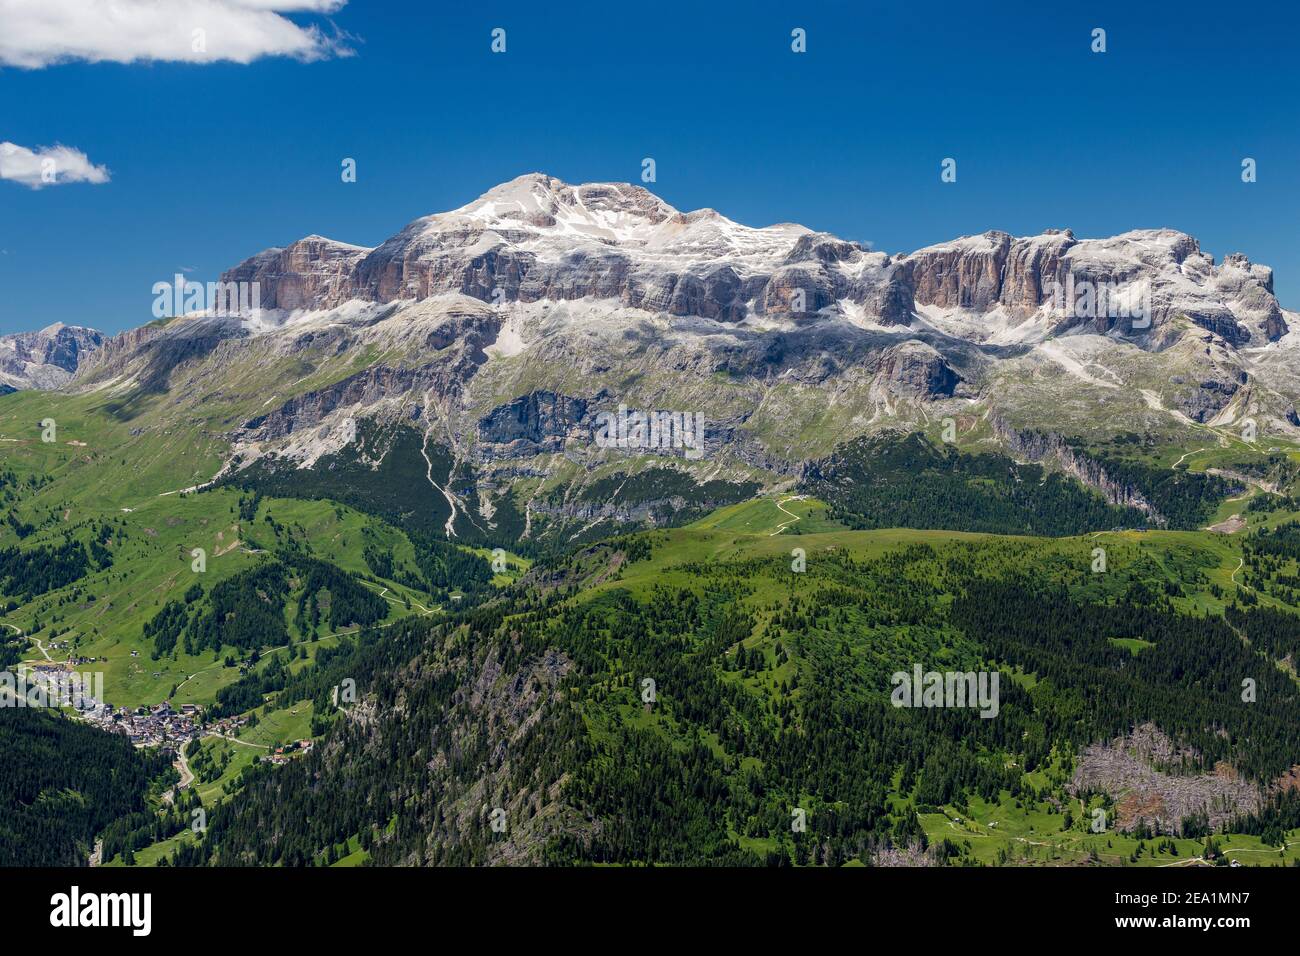 View on the Sella mountain group. Piz Boè peak. Arabba, Passo Pordoi. Italian Alps. Europe. Stock Photo